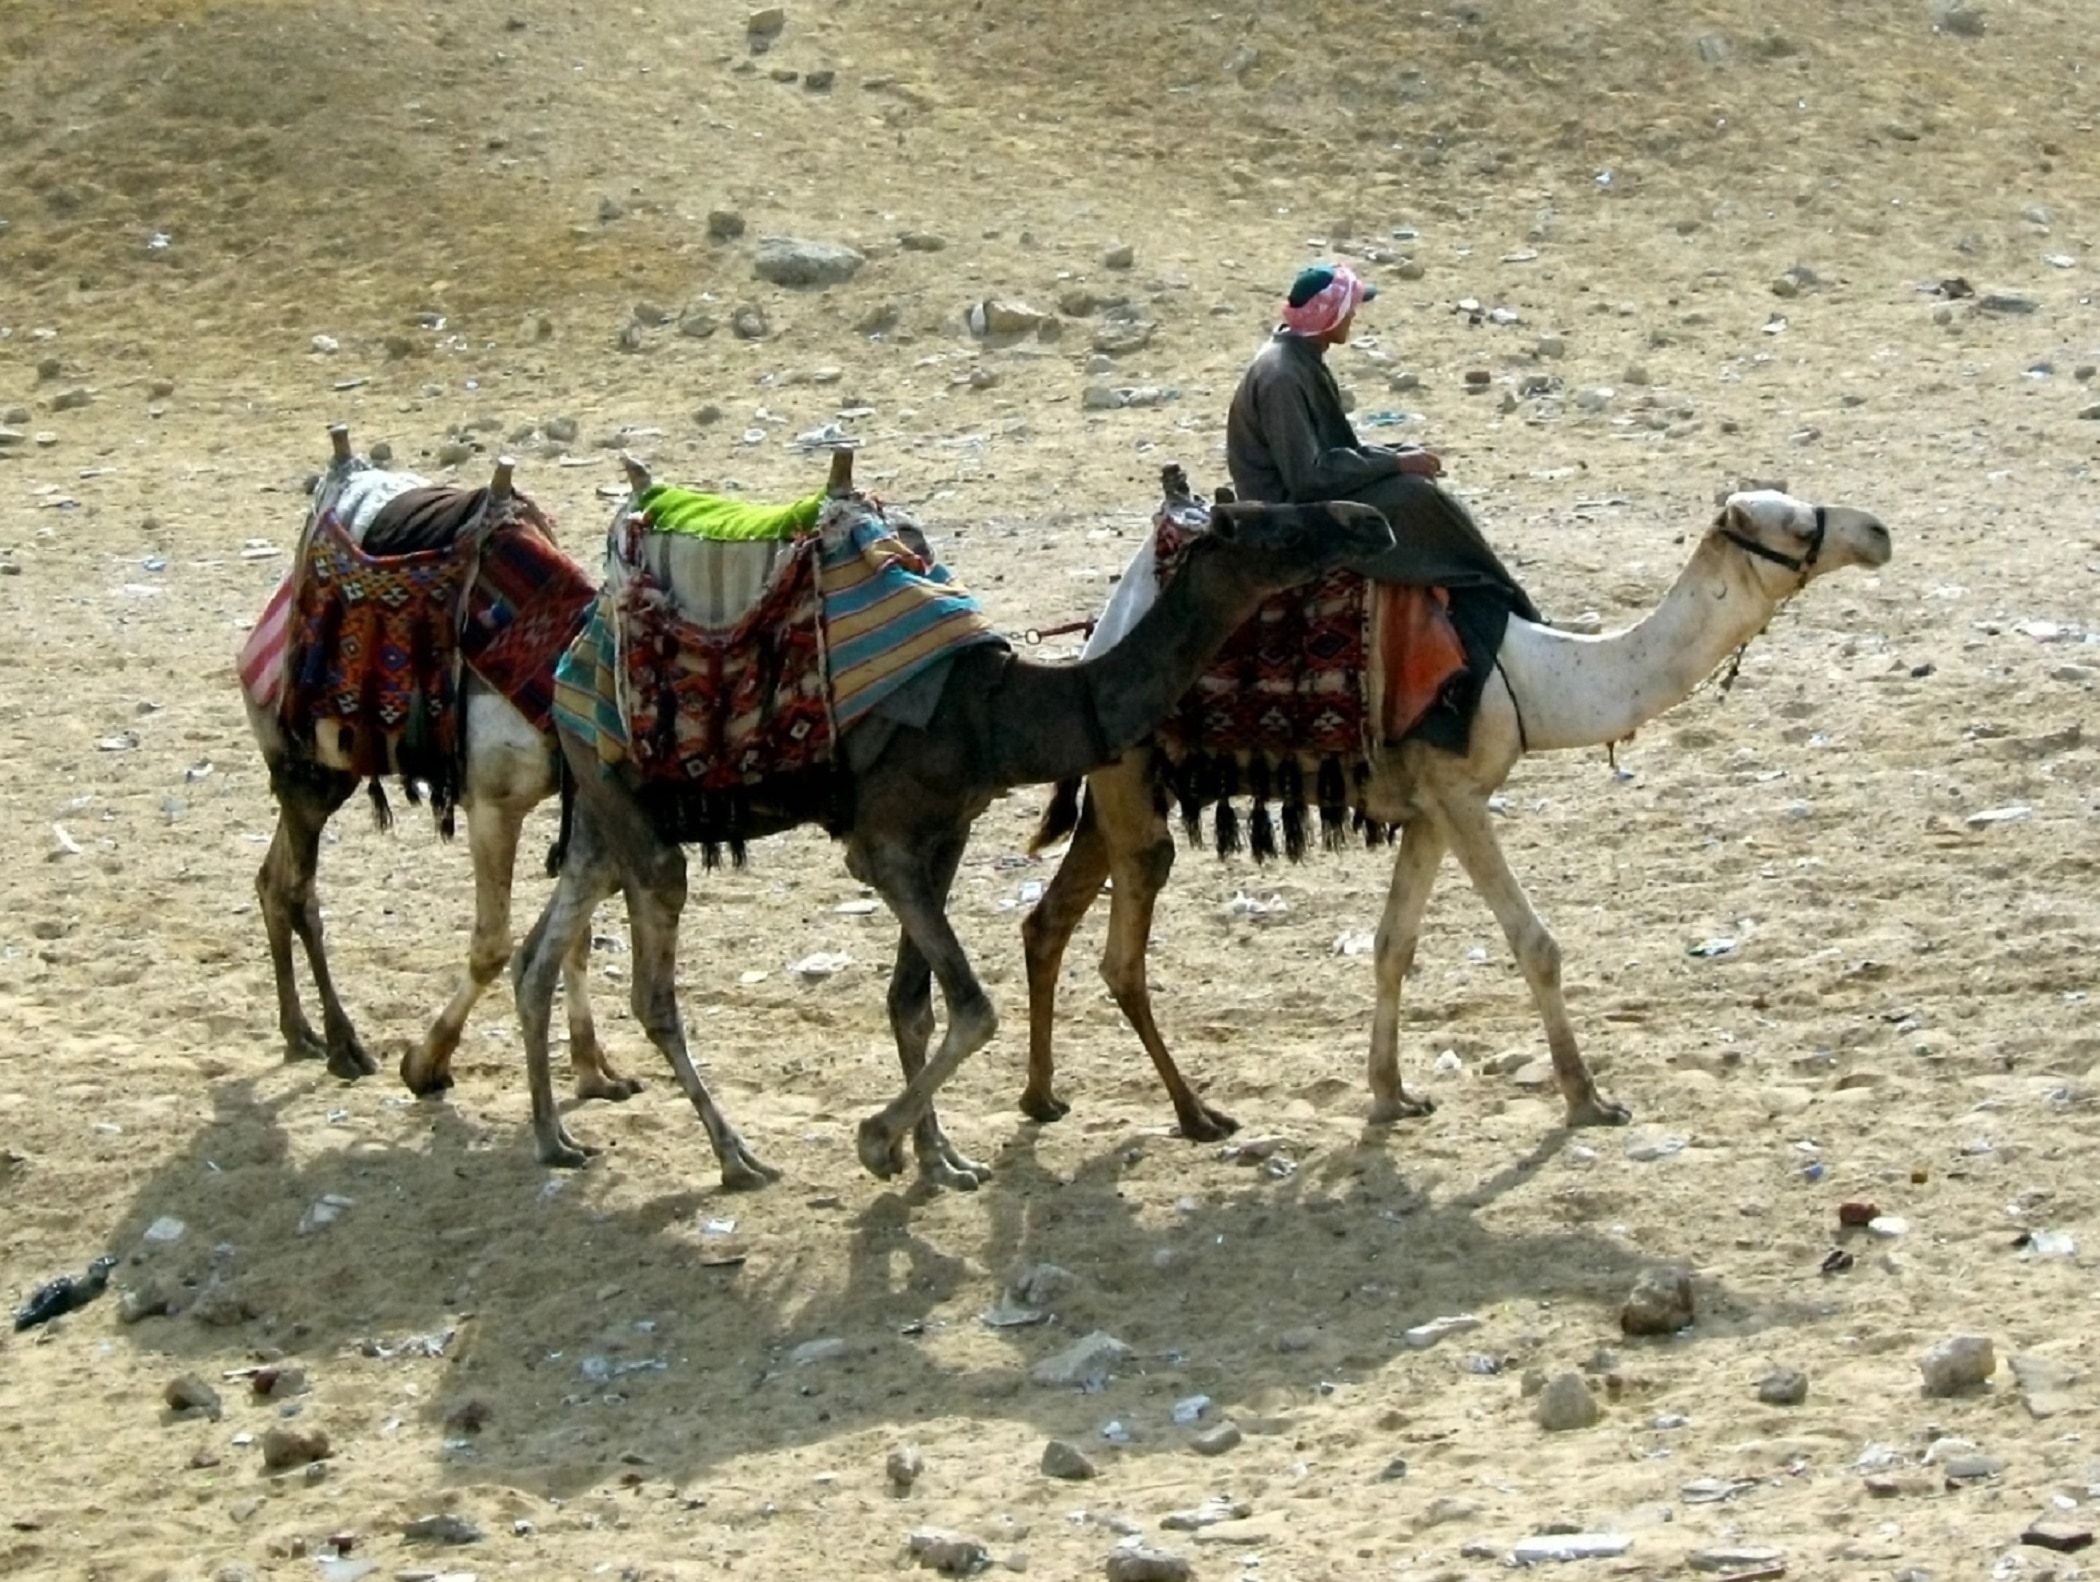 3 camels